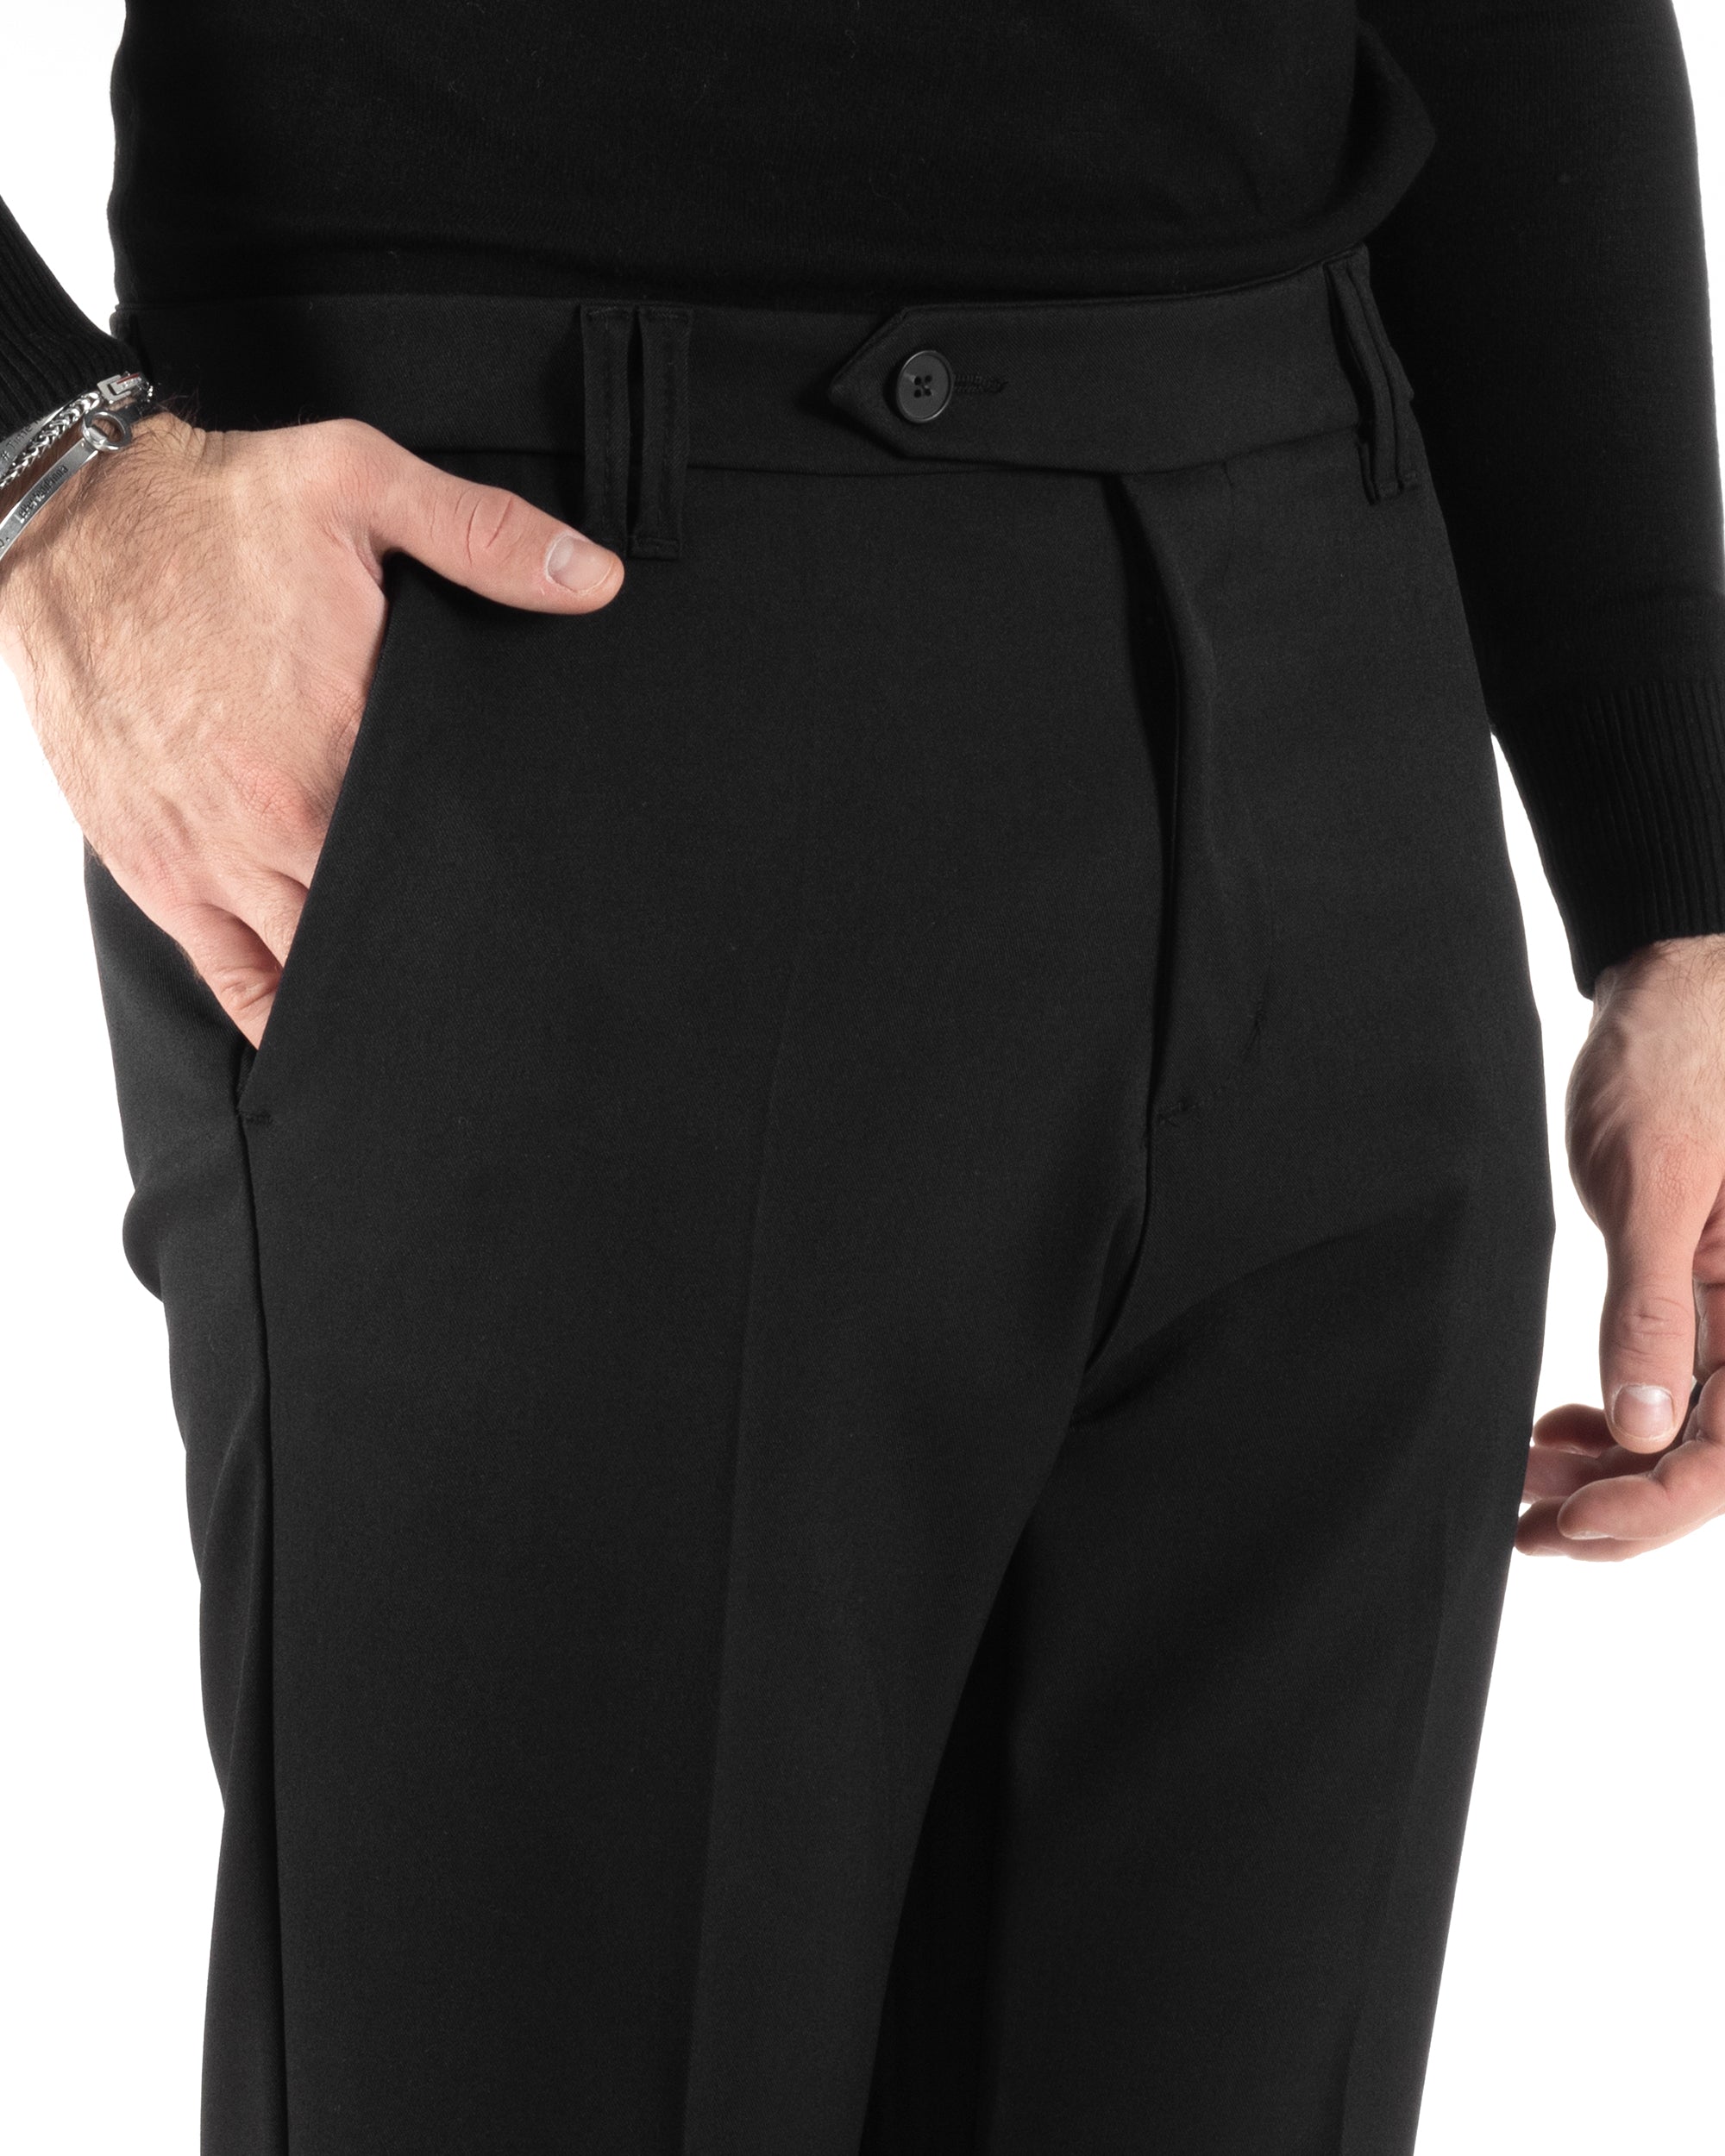 Pantaloni Uomo Viscosa Tasca America Classico Abbottonatura Allungata Casual Nero GIOSAL-P6011A